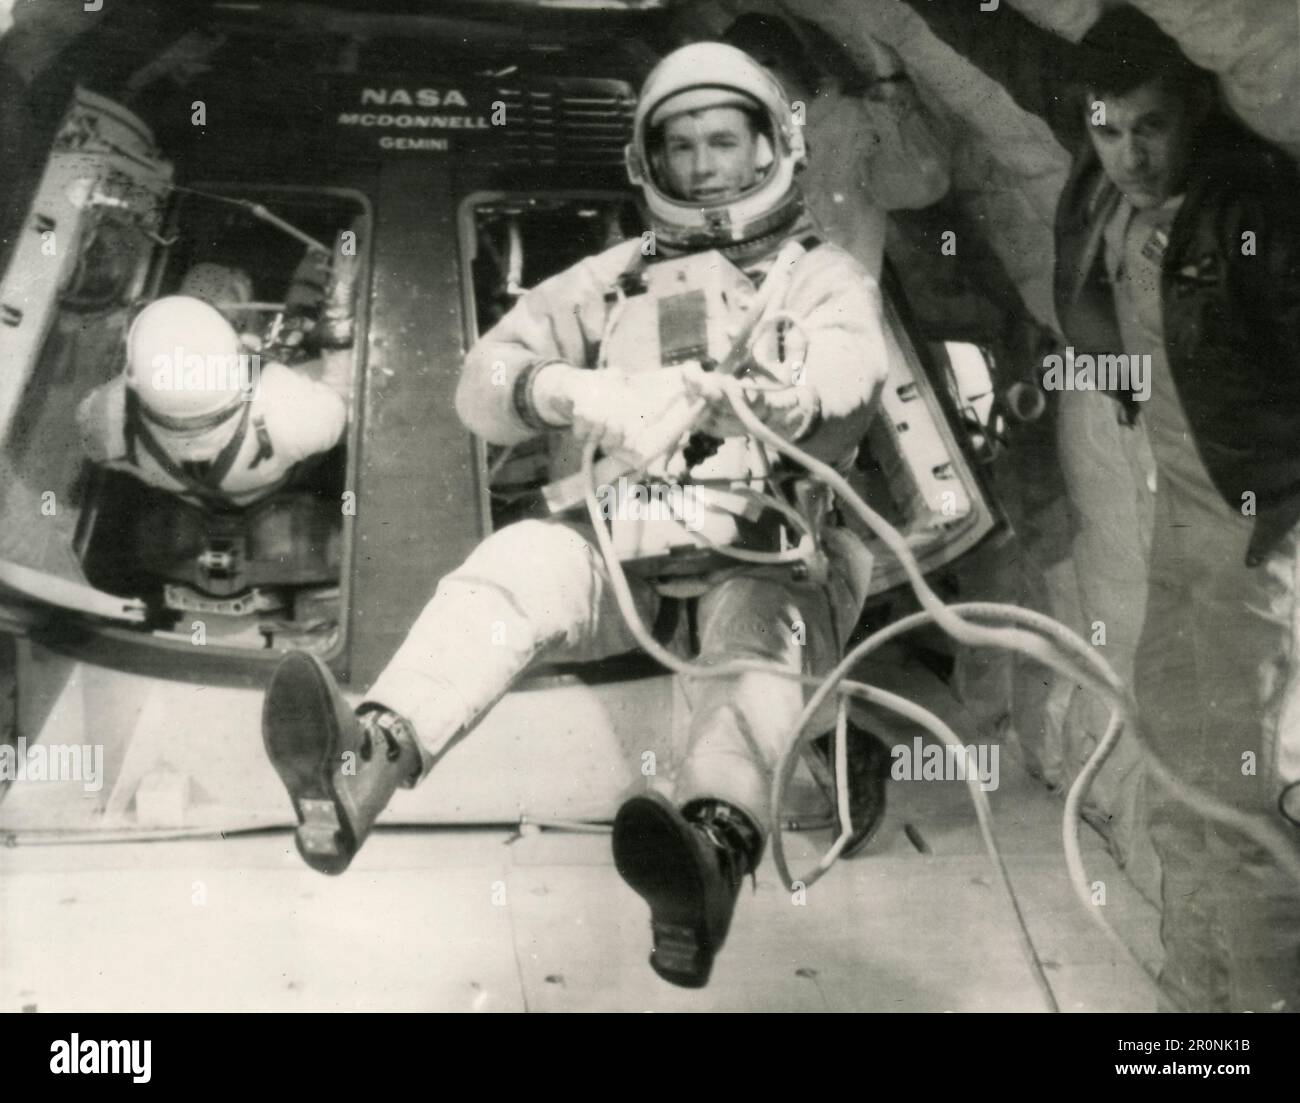 Amerikanischer Austronaut David Scott, Kopilot der Gemini 8 NASA-Mission, praktiziert eine Tether Line, Florida USA 1966 Stockfoto